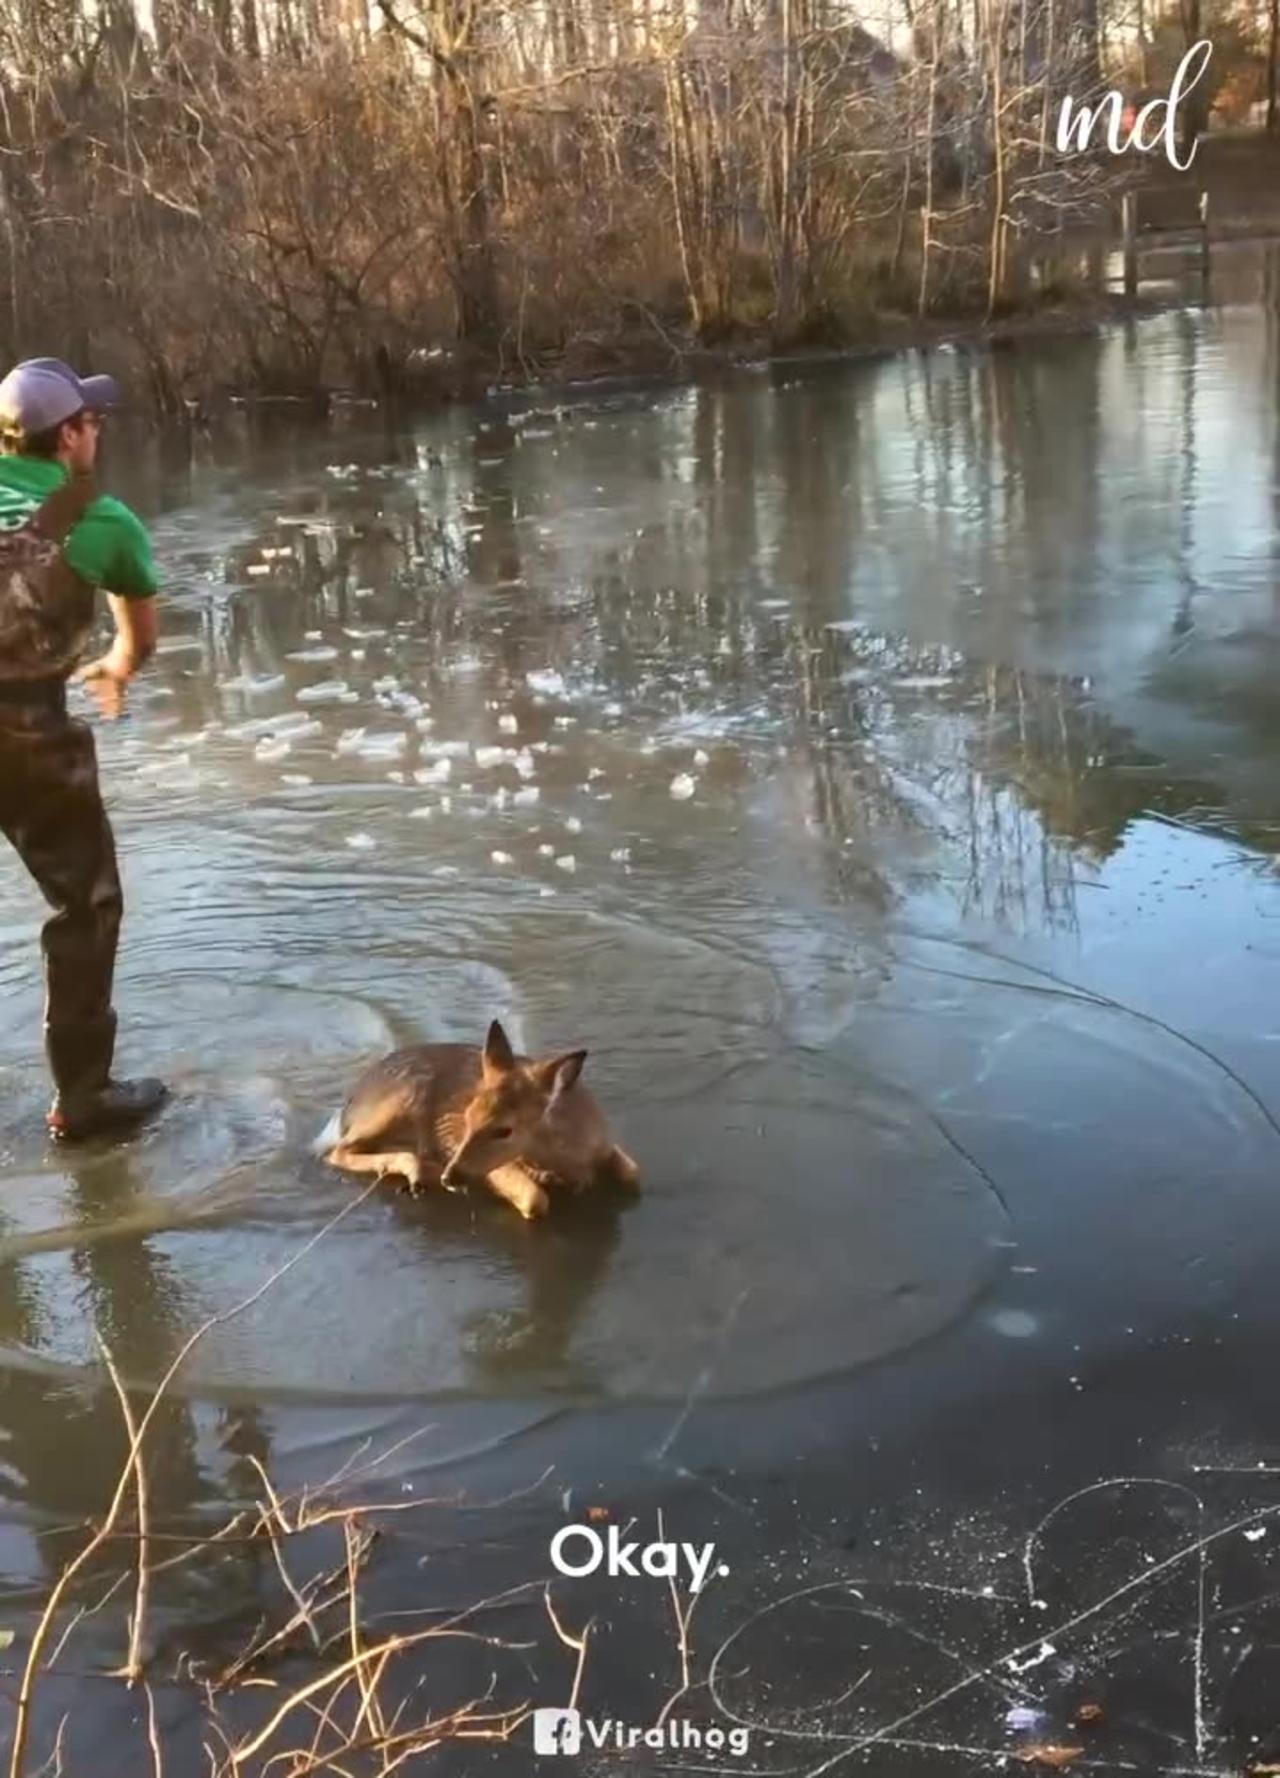 Kind Family Helps Baby Deer Stuck In Frozen Pond